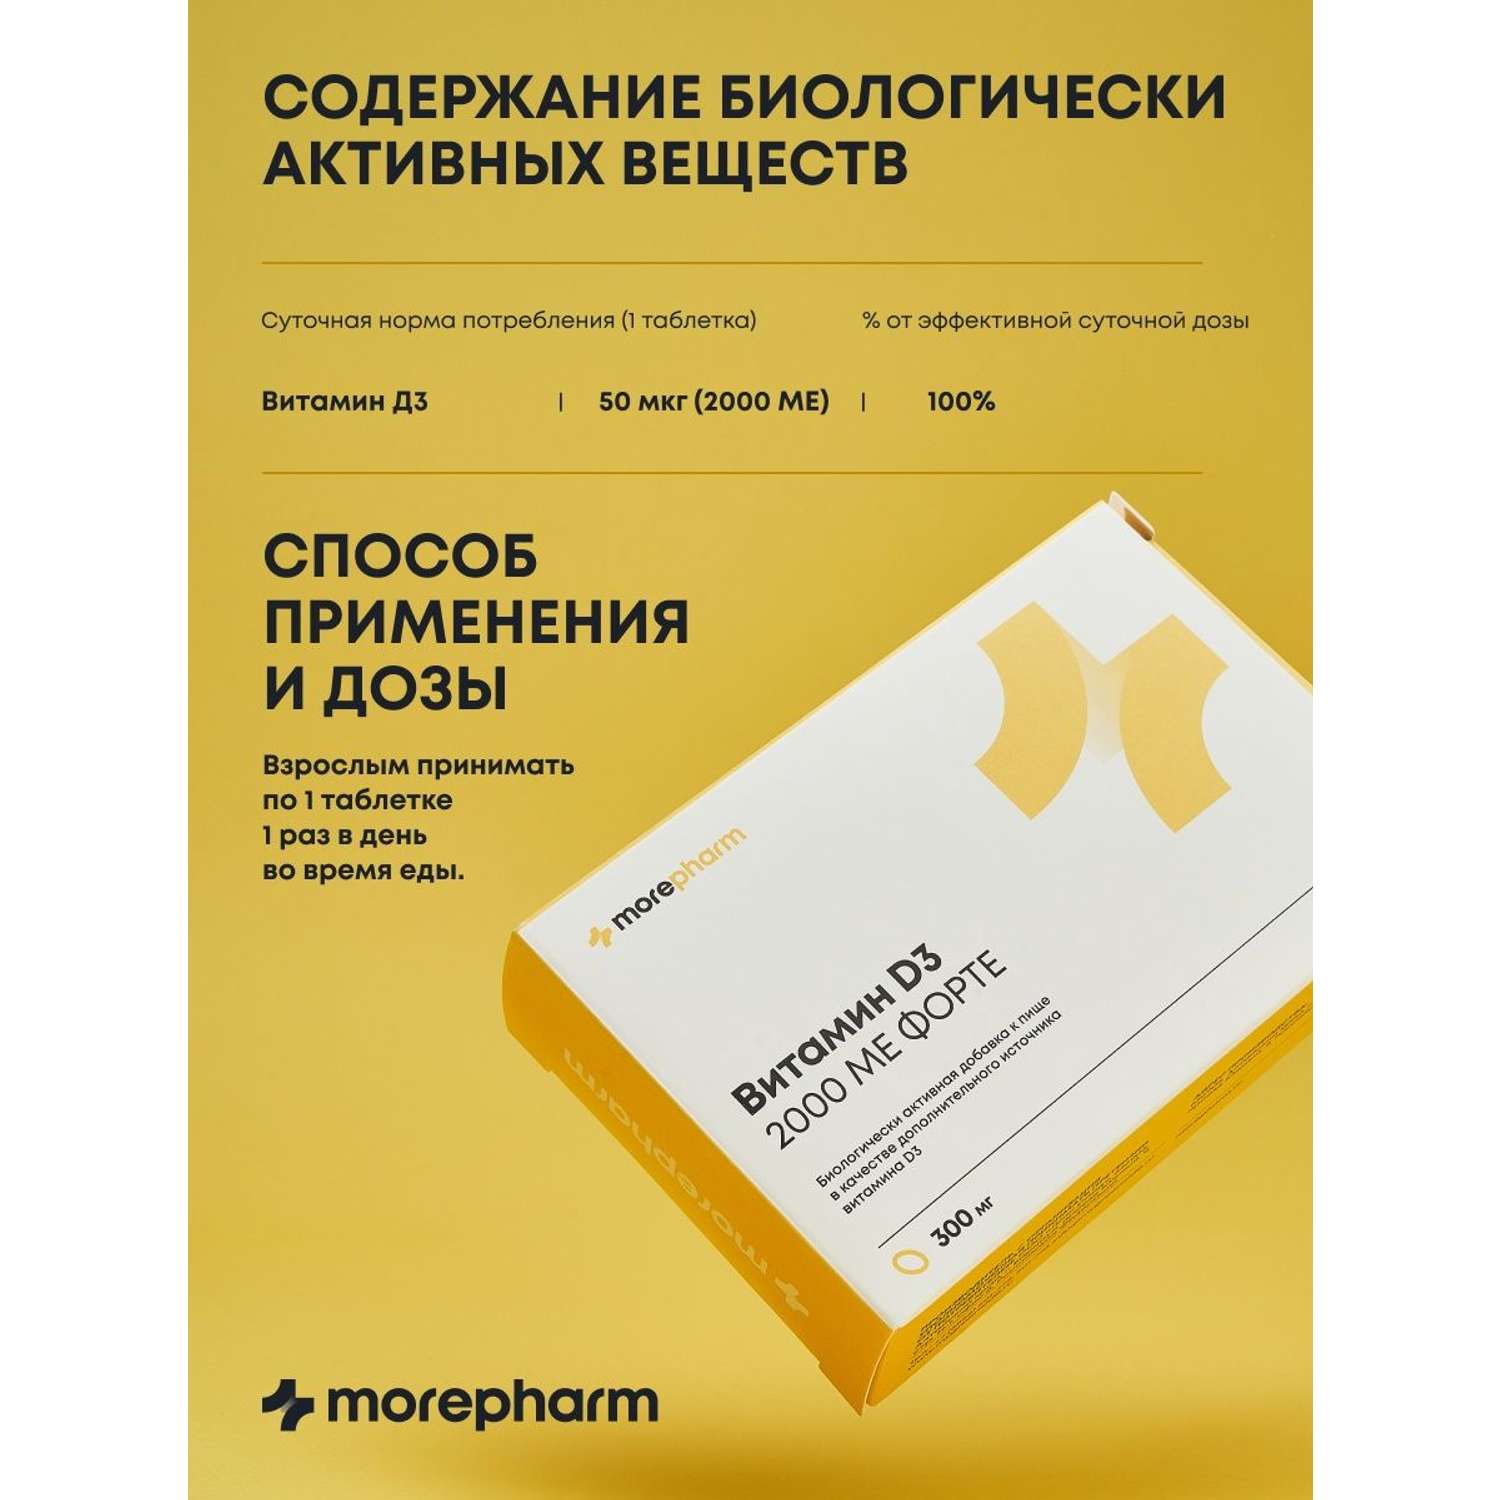 БАД morepharm Витамин Д3 2000 МЕ 60 капсул - фото 7